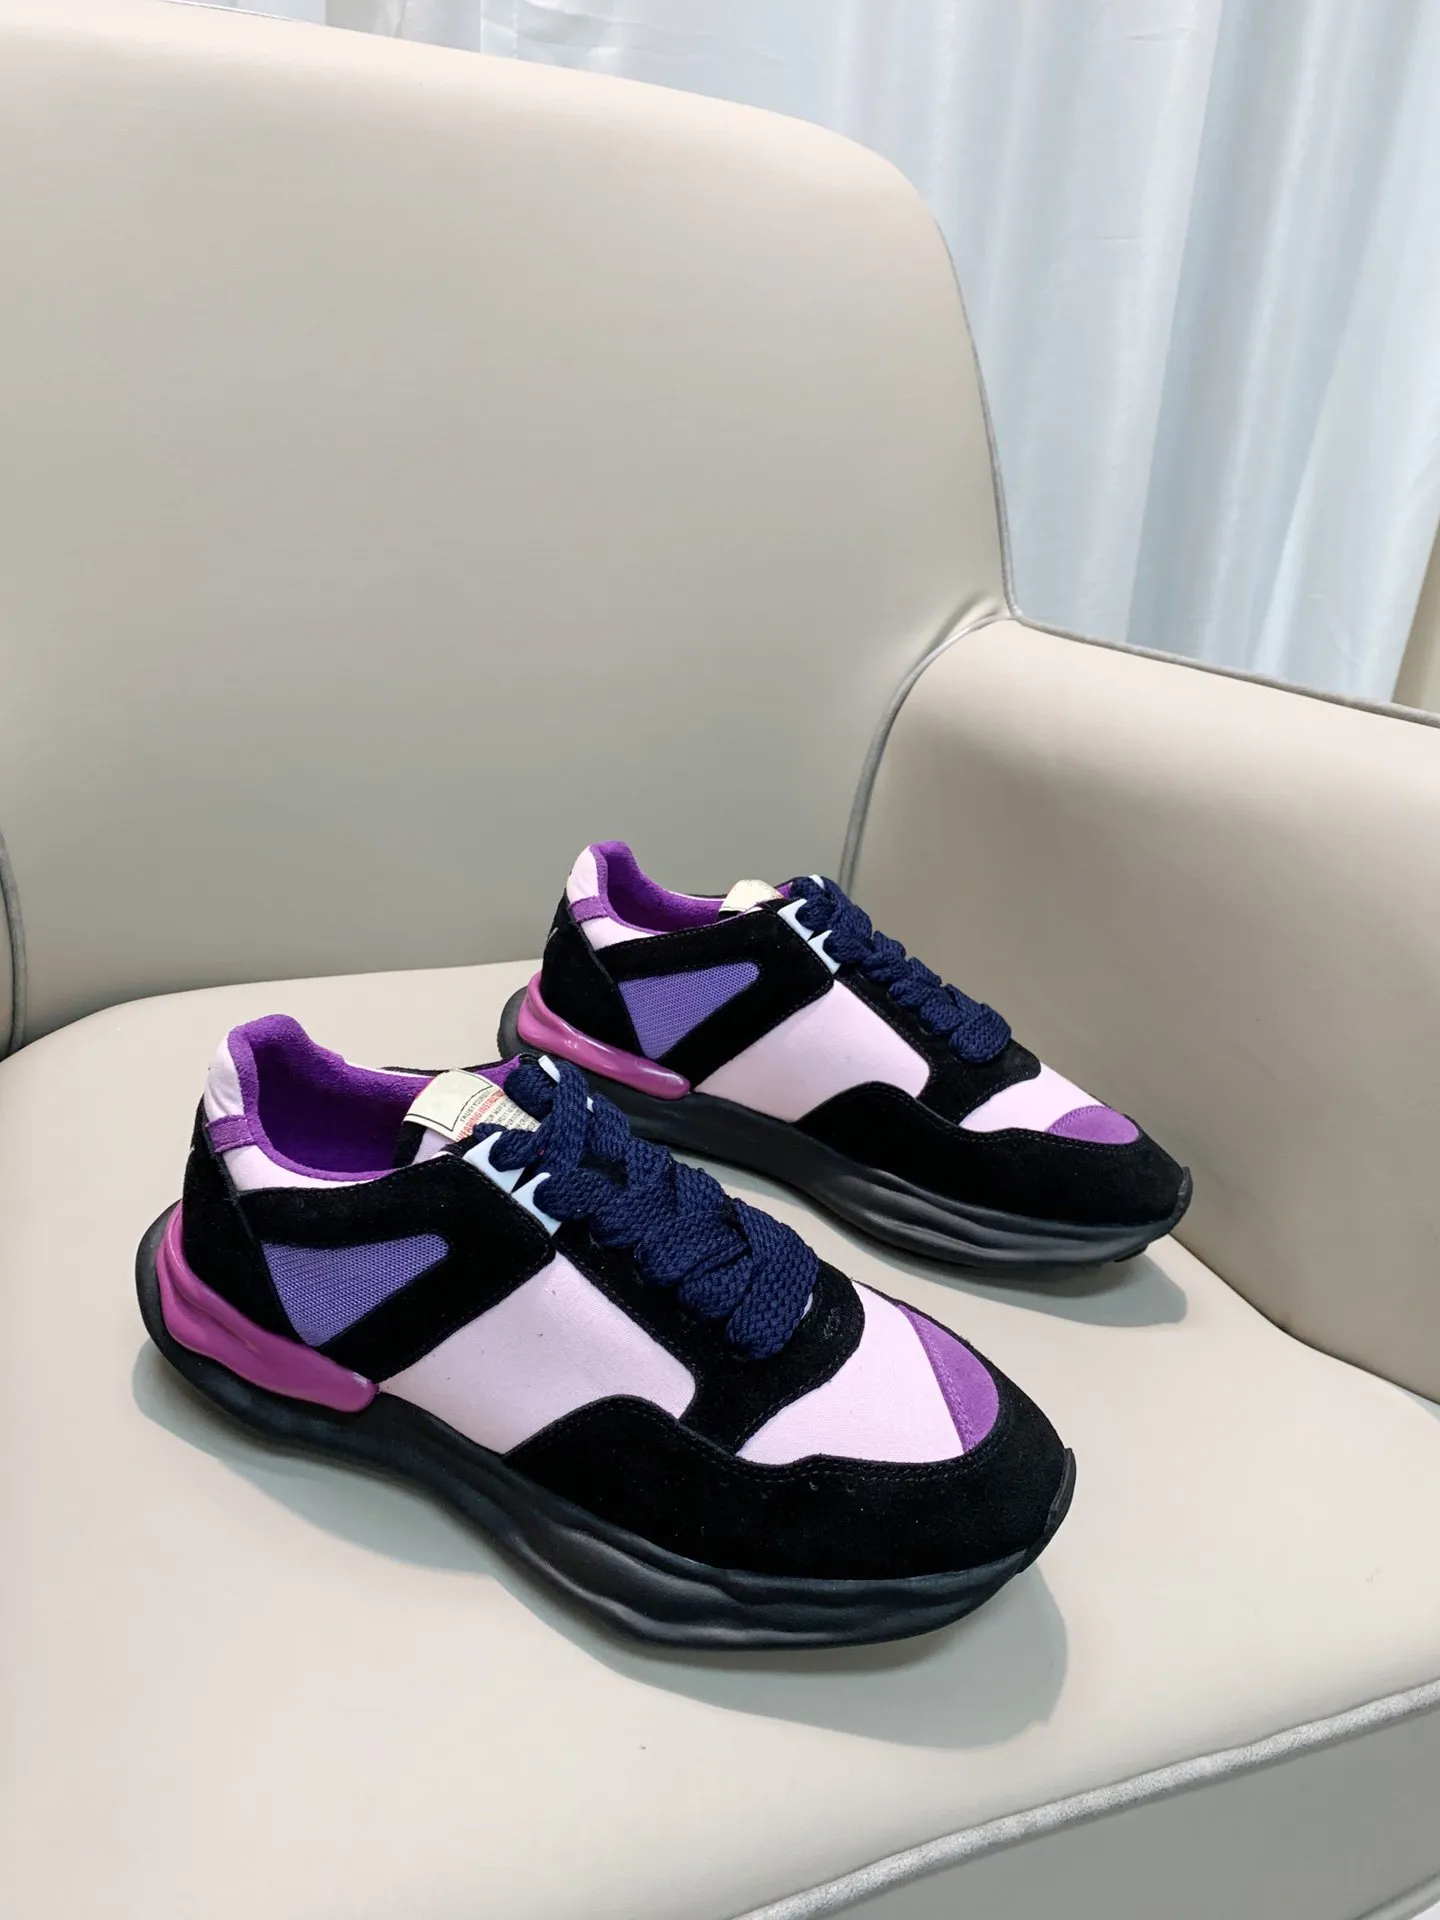 Spring / Summer Casual Shoes dla mężczyzn kobiet, czysty biały i czarny / szary skóra patchwork, rozmiary 39-44